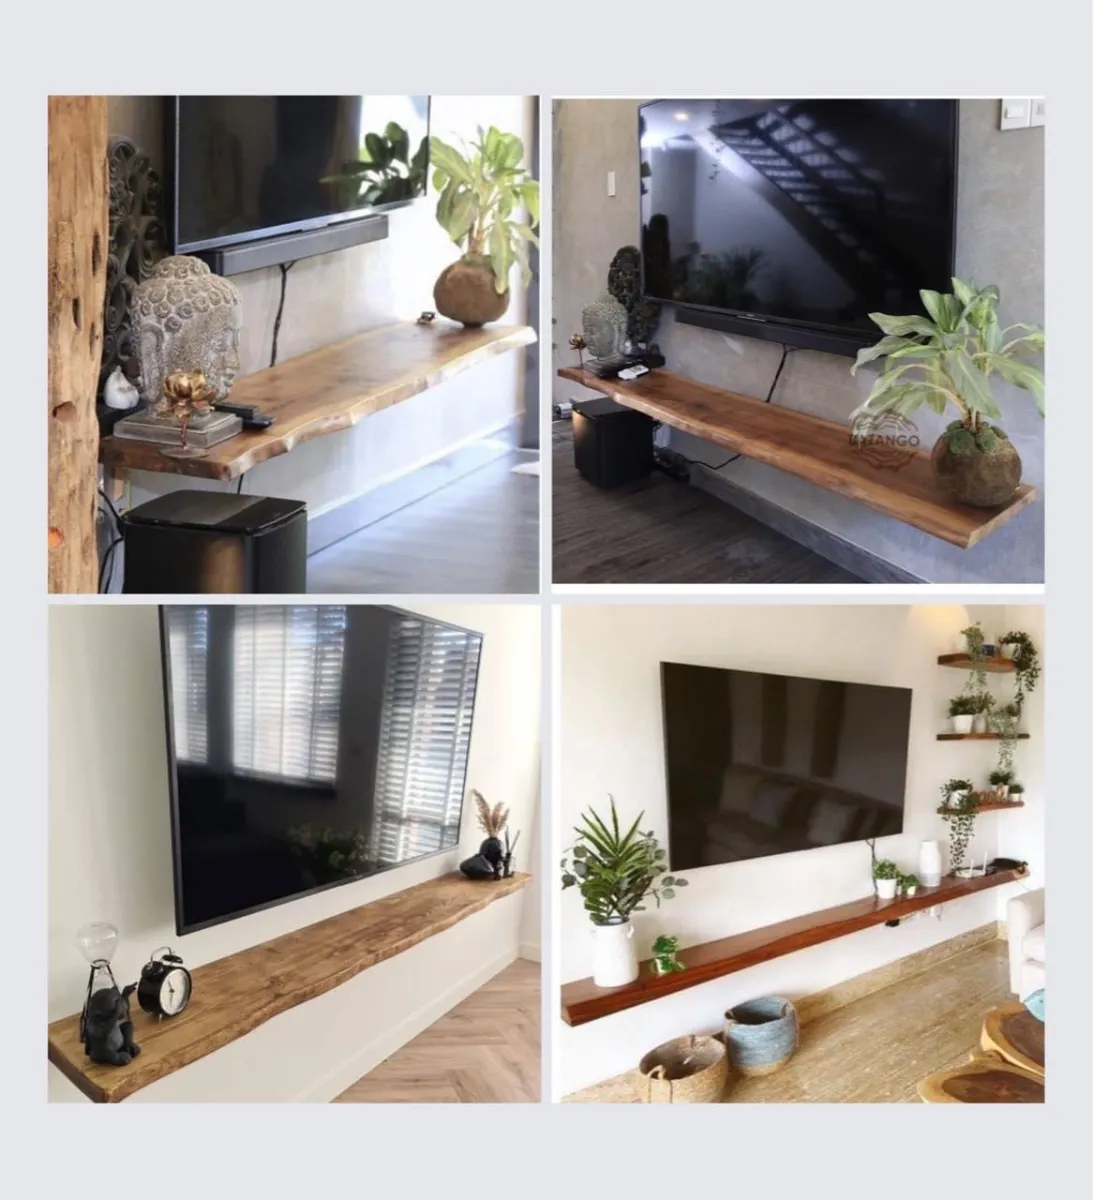 Hãy tưởng tượng một chiếc kệ tivi gỗ tự nhiên đẹp mắt được treo lên tường để tạo ra không gian phòng khách sang trọng và ấm cúng. Bạn sẽ yêu thích vẻ đẹp tự nhiên mà nó mang lại cho không gian của bạn.